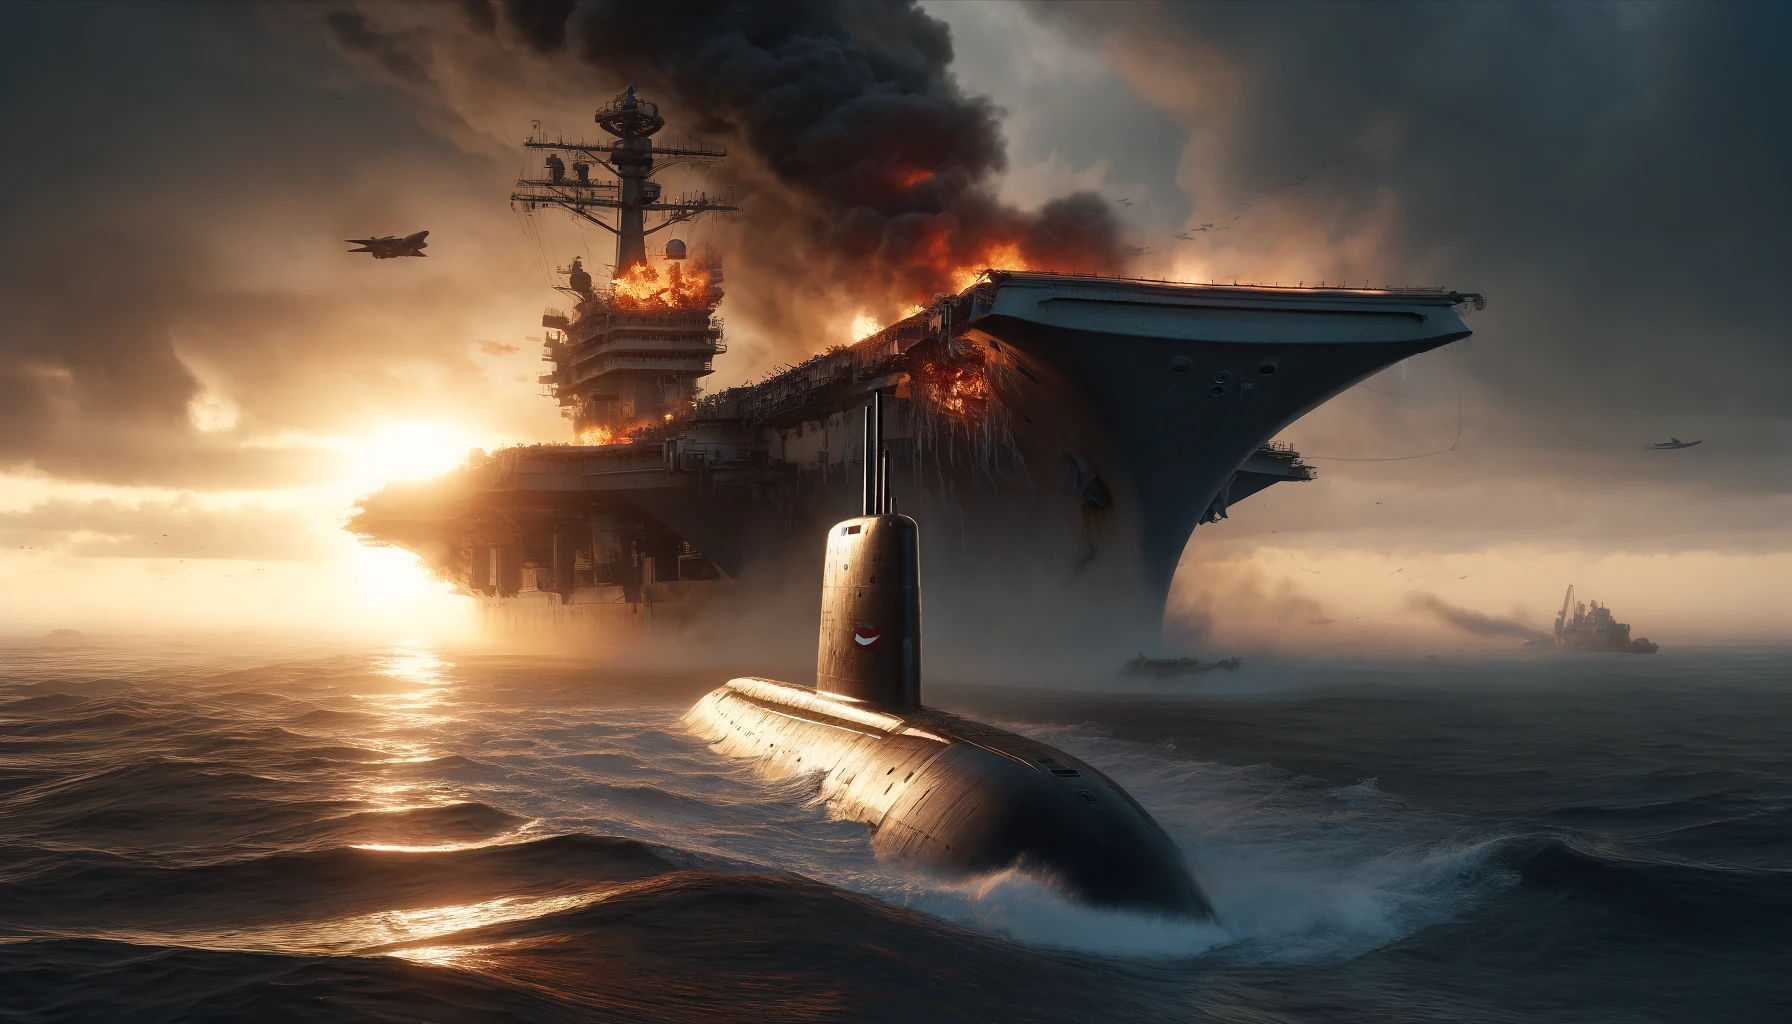 Francia “hunde” portaaviones de EE. UU. con submarino nuclear